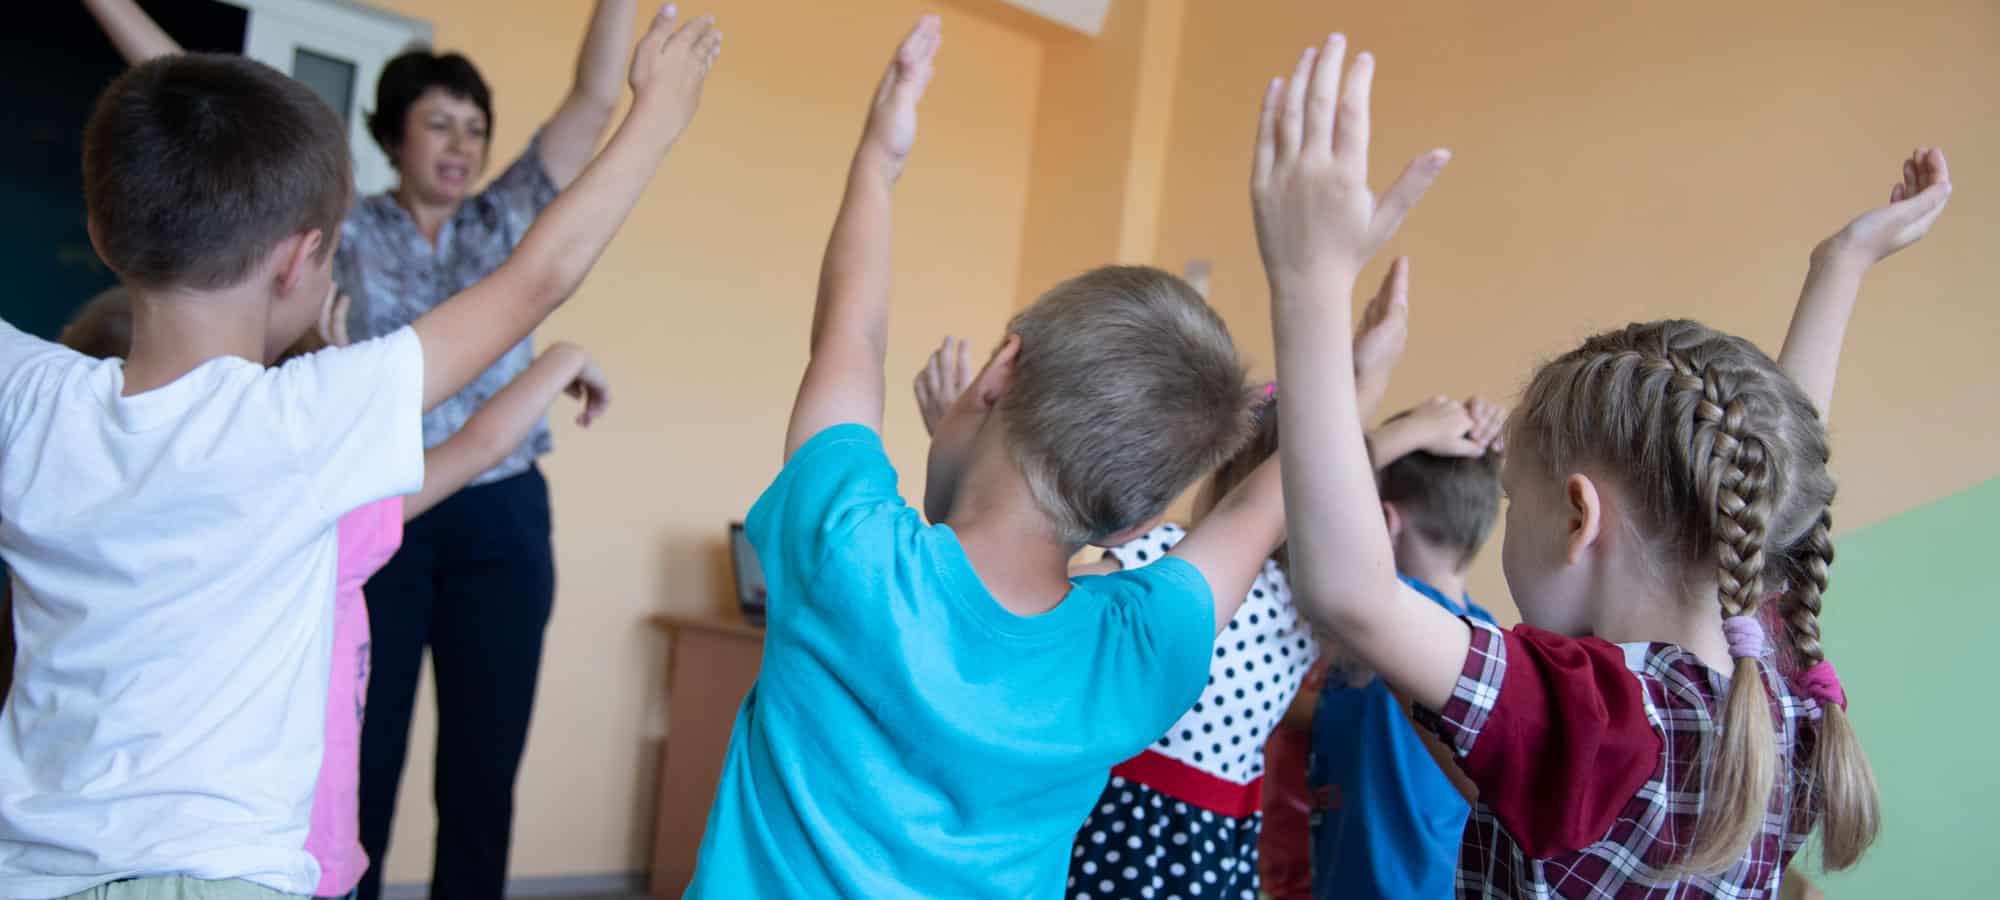 En gruppe med barn, med ryggen til, strekker hendene i været. Foran dem står psykologen, hun har mørkt kort hår, mønstret skjorte og svarte bukser. Foto: Katerina Ilievska